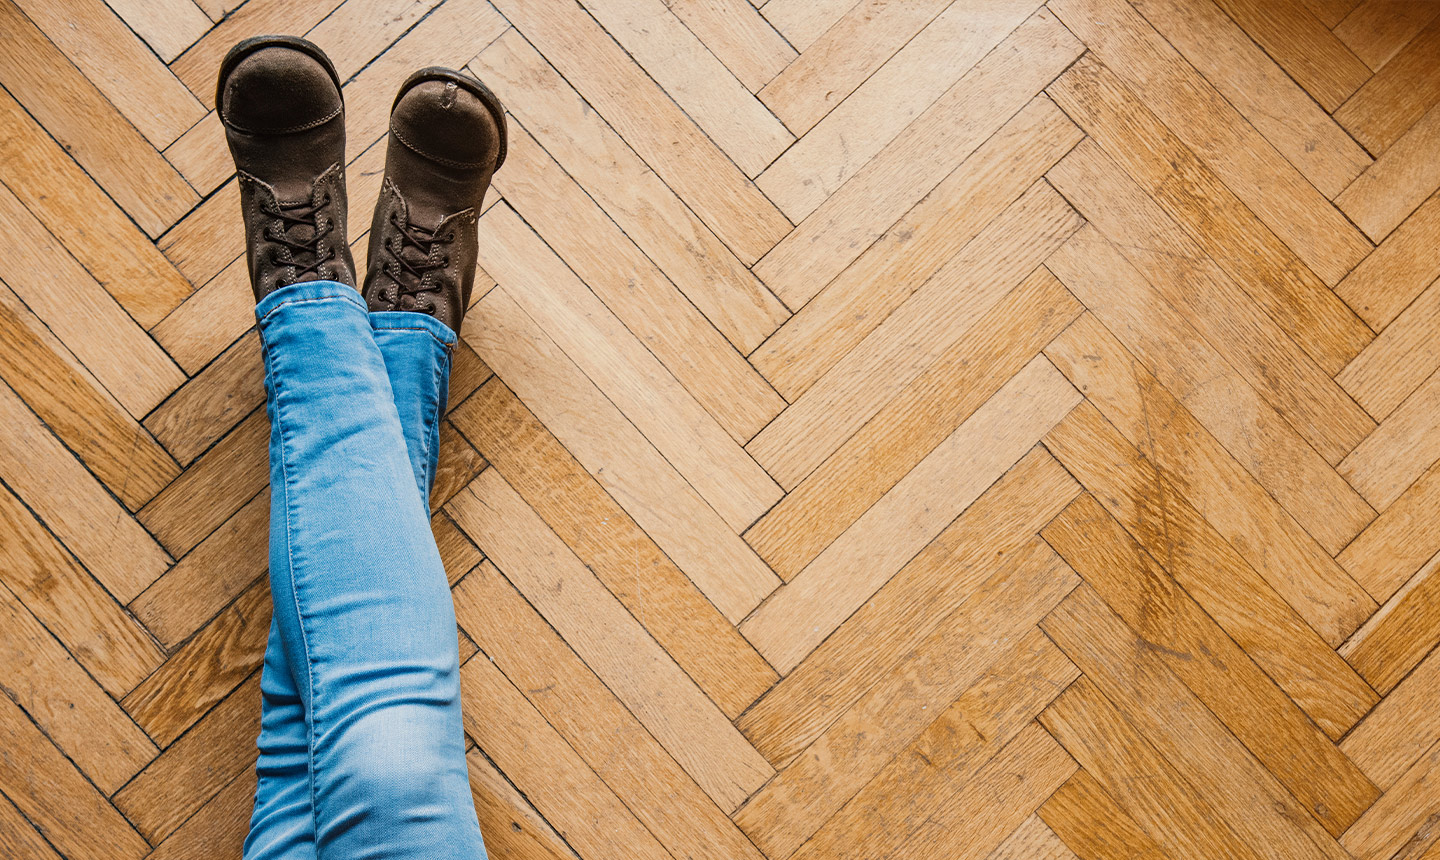 Există vreun risc dacă folosesc un produs de curățare laminat pe podea din lemn? (Sau vice versa).